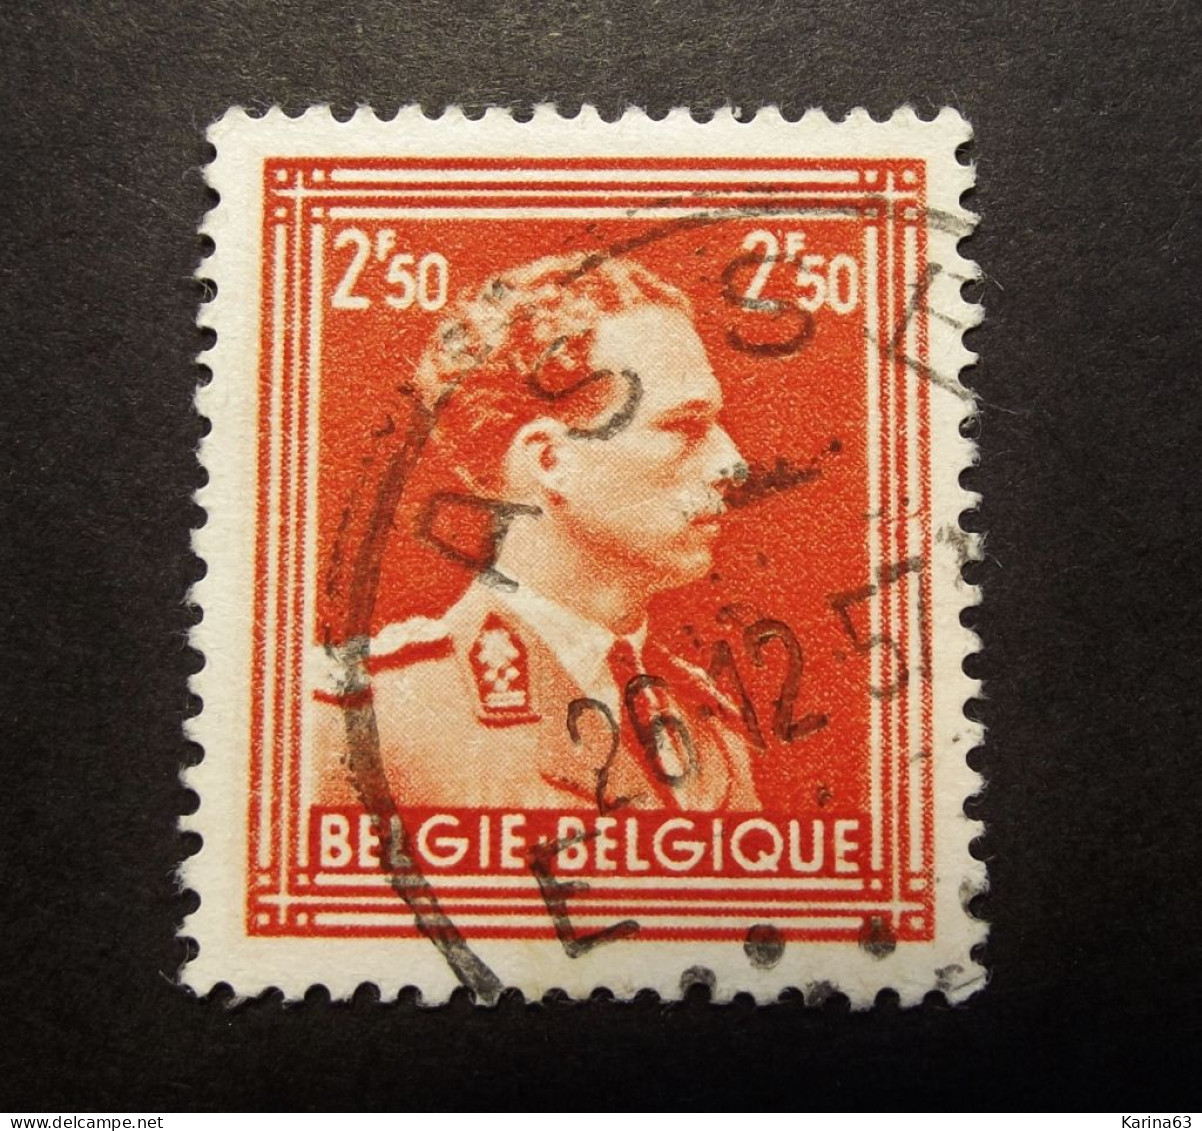 Belgie Belgique - 1951-  OPB/COB  N° 886  - 2 Fr 50  - Obl.  -  ASSE - 1957 - Usados